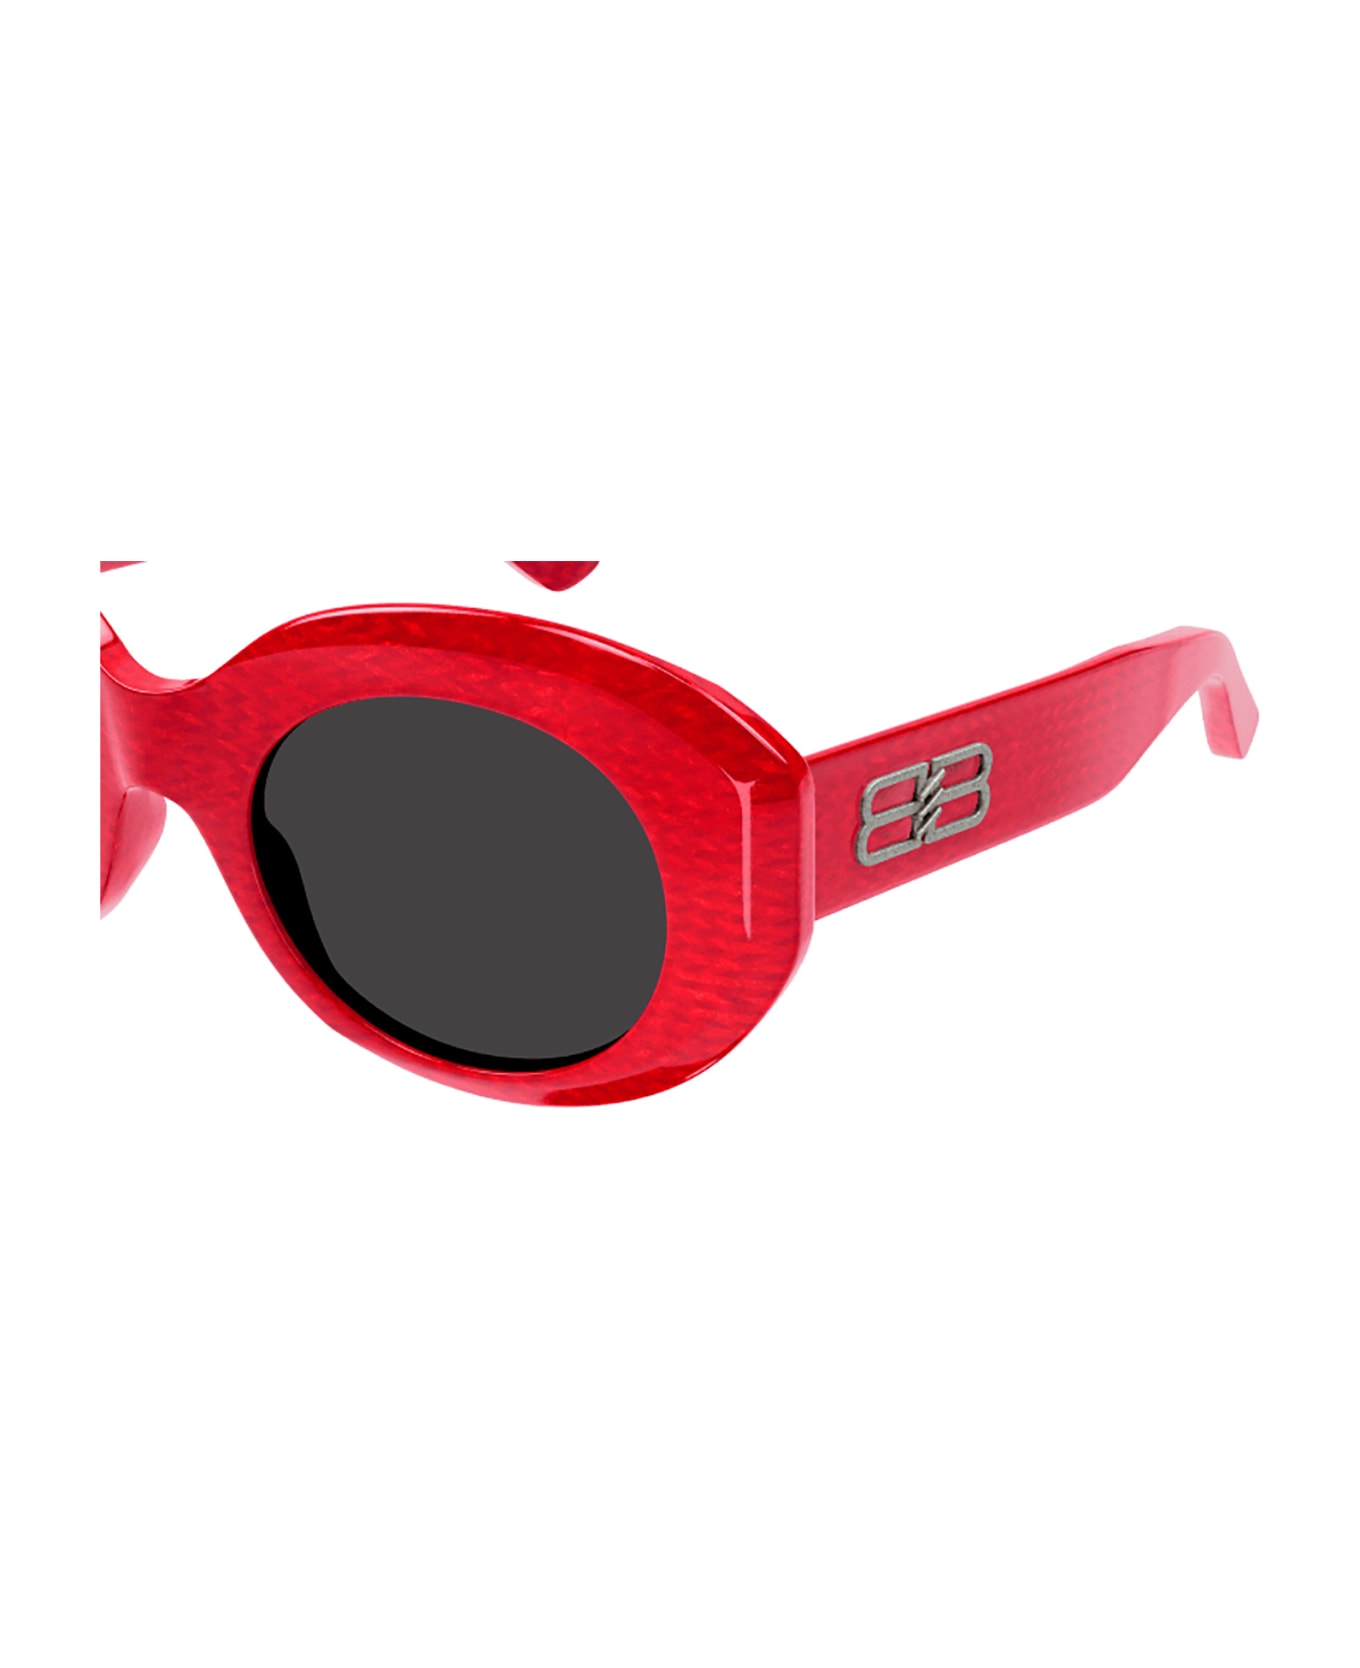 Balenciaga Eyewear 1e684id0a - Red Red Grey